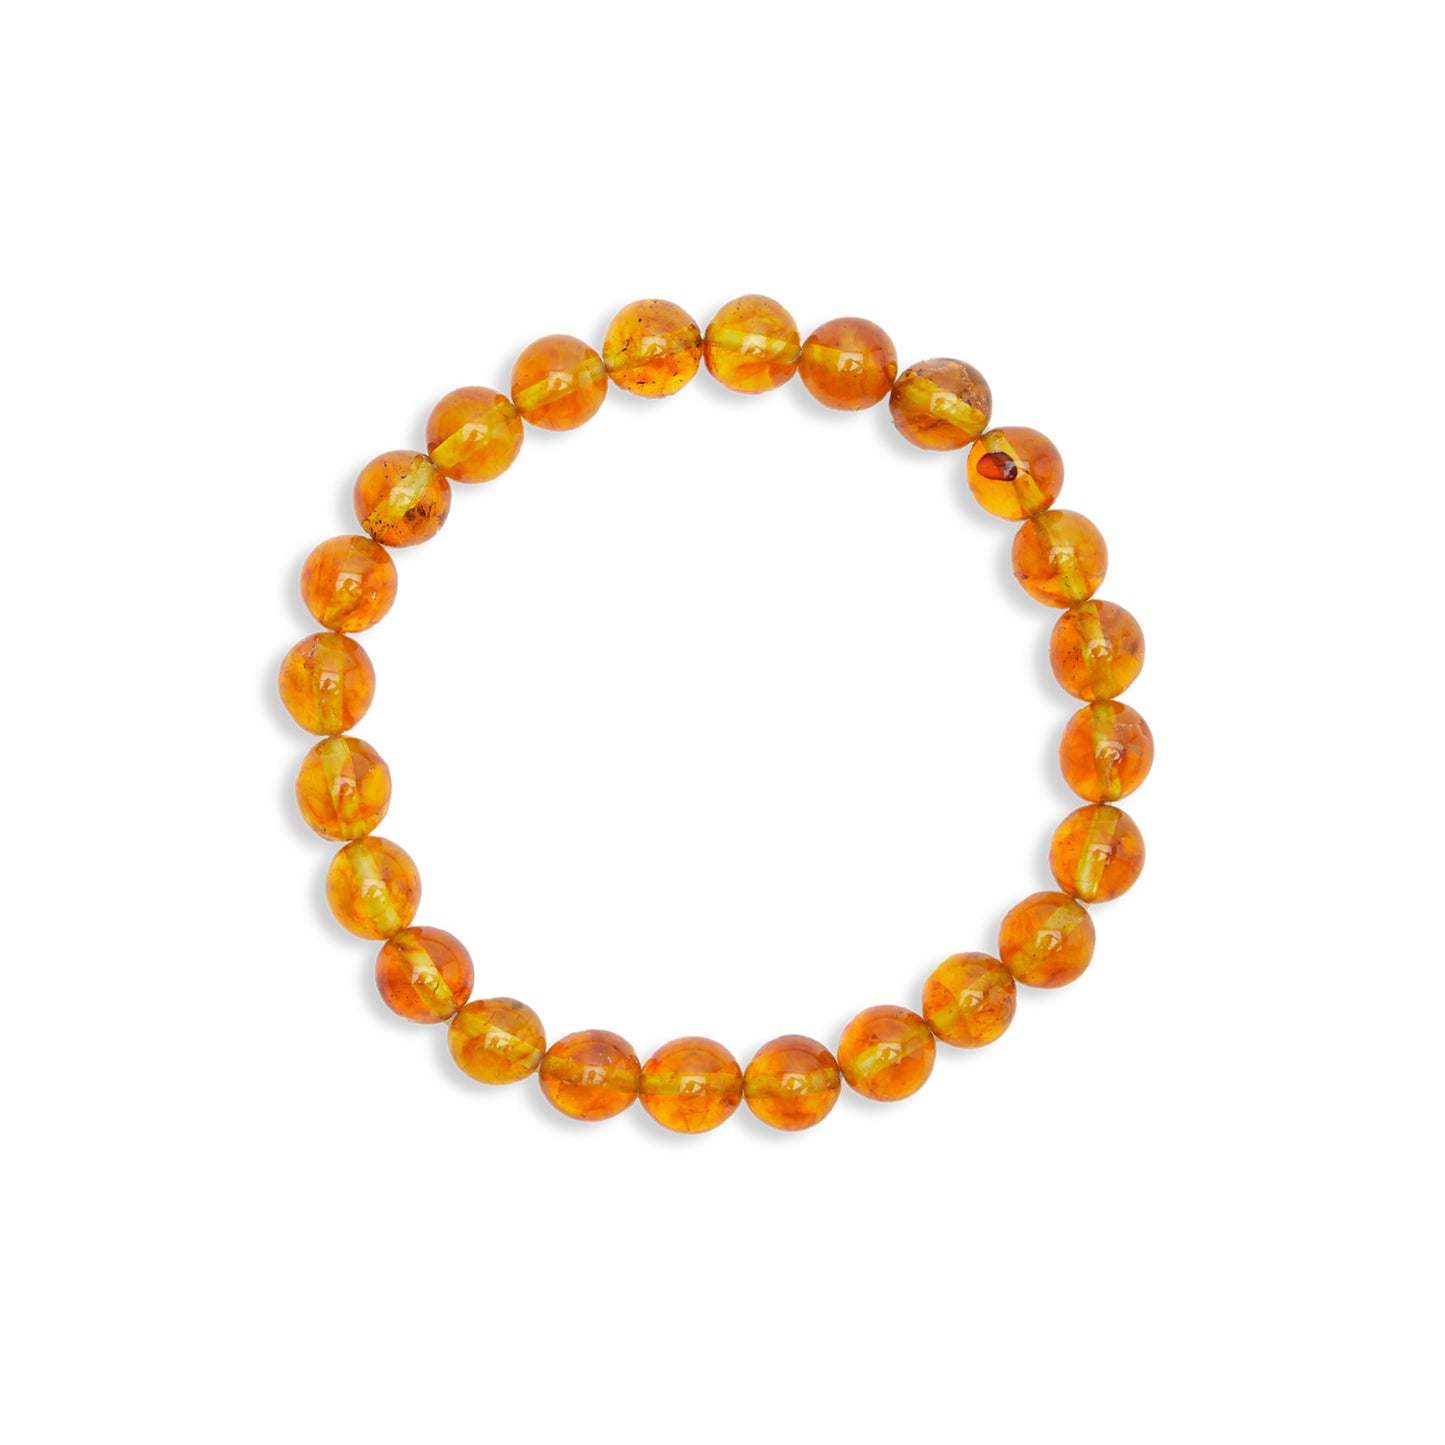 Bracelet écologique “Rayons Solaires” en Ambre jaune - Karma Yoga Shop